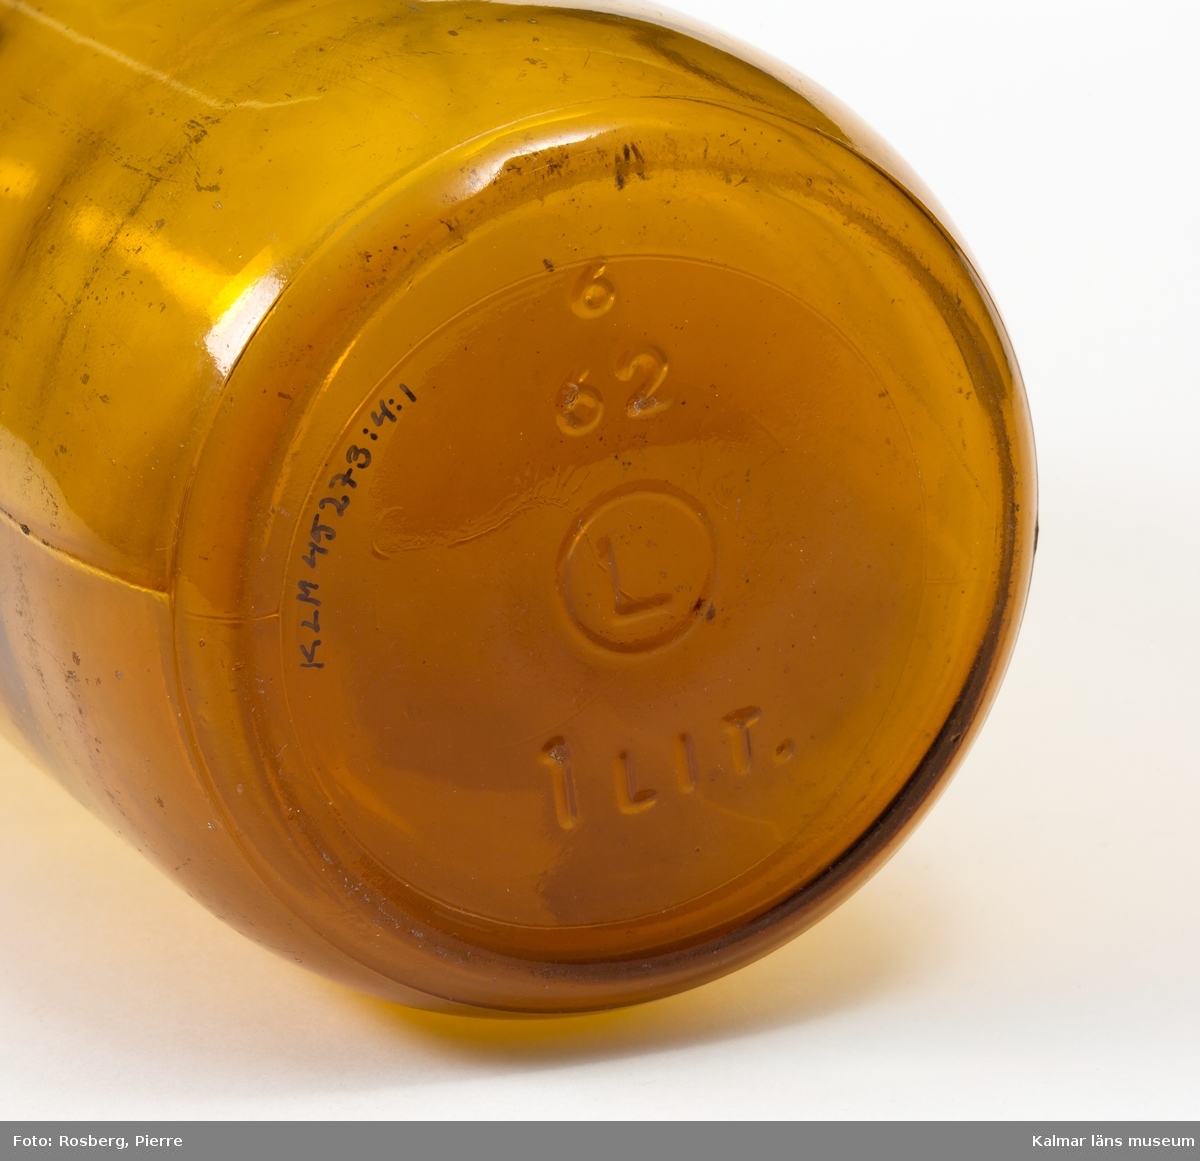 KLM 45273:4:1 Flaska för filmjölk, av glas, brunt. Volym 1 liter. Botten präglad med, 6 62 L (inom en cirkel) 1 LIT. Blå aluminiumkapsyl präglad med texten, Kalmarbygdens mejeriförening 23 Filmjölk.